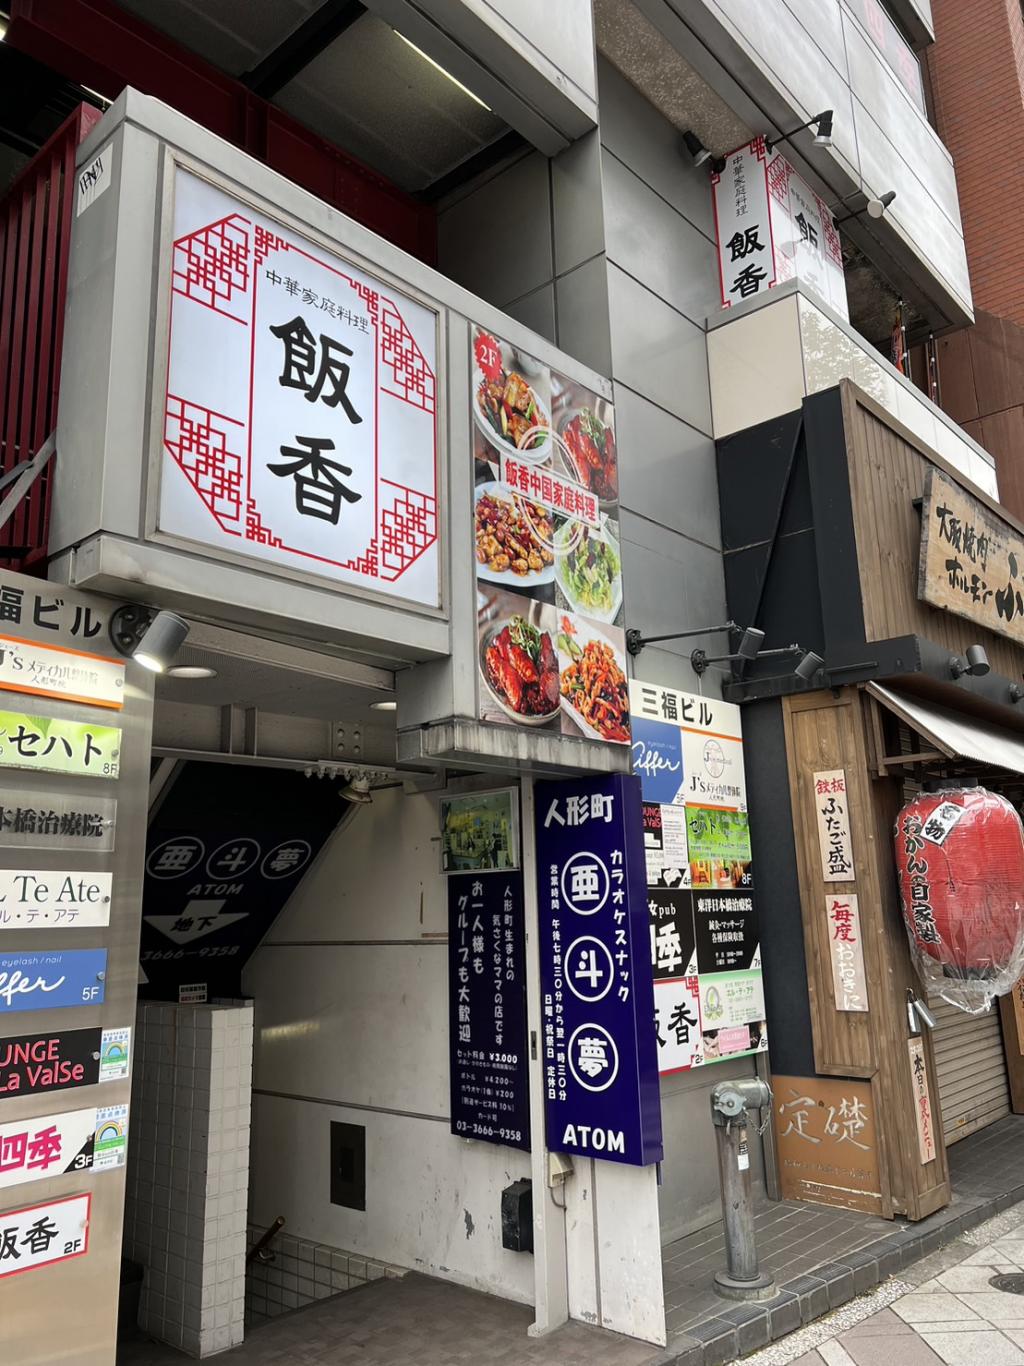 本格北京.四川料理の店「飯香」の紹介です